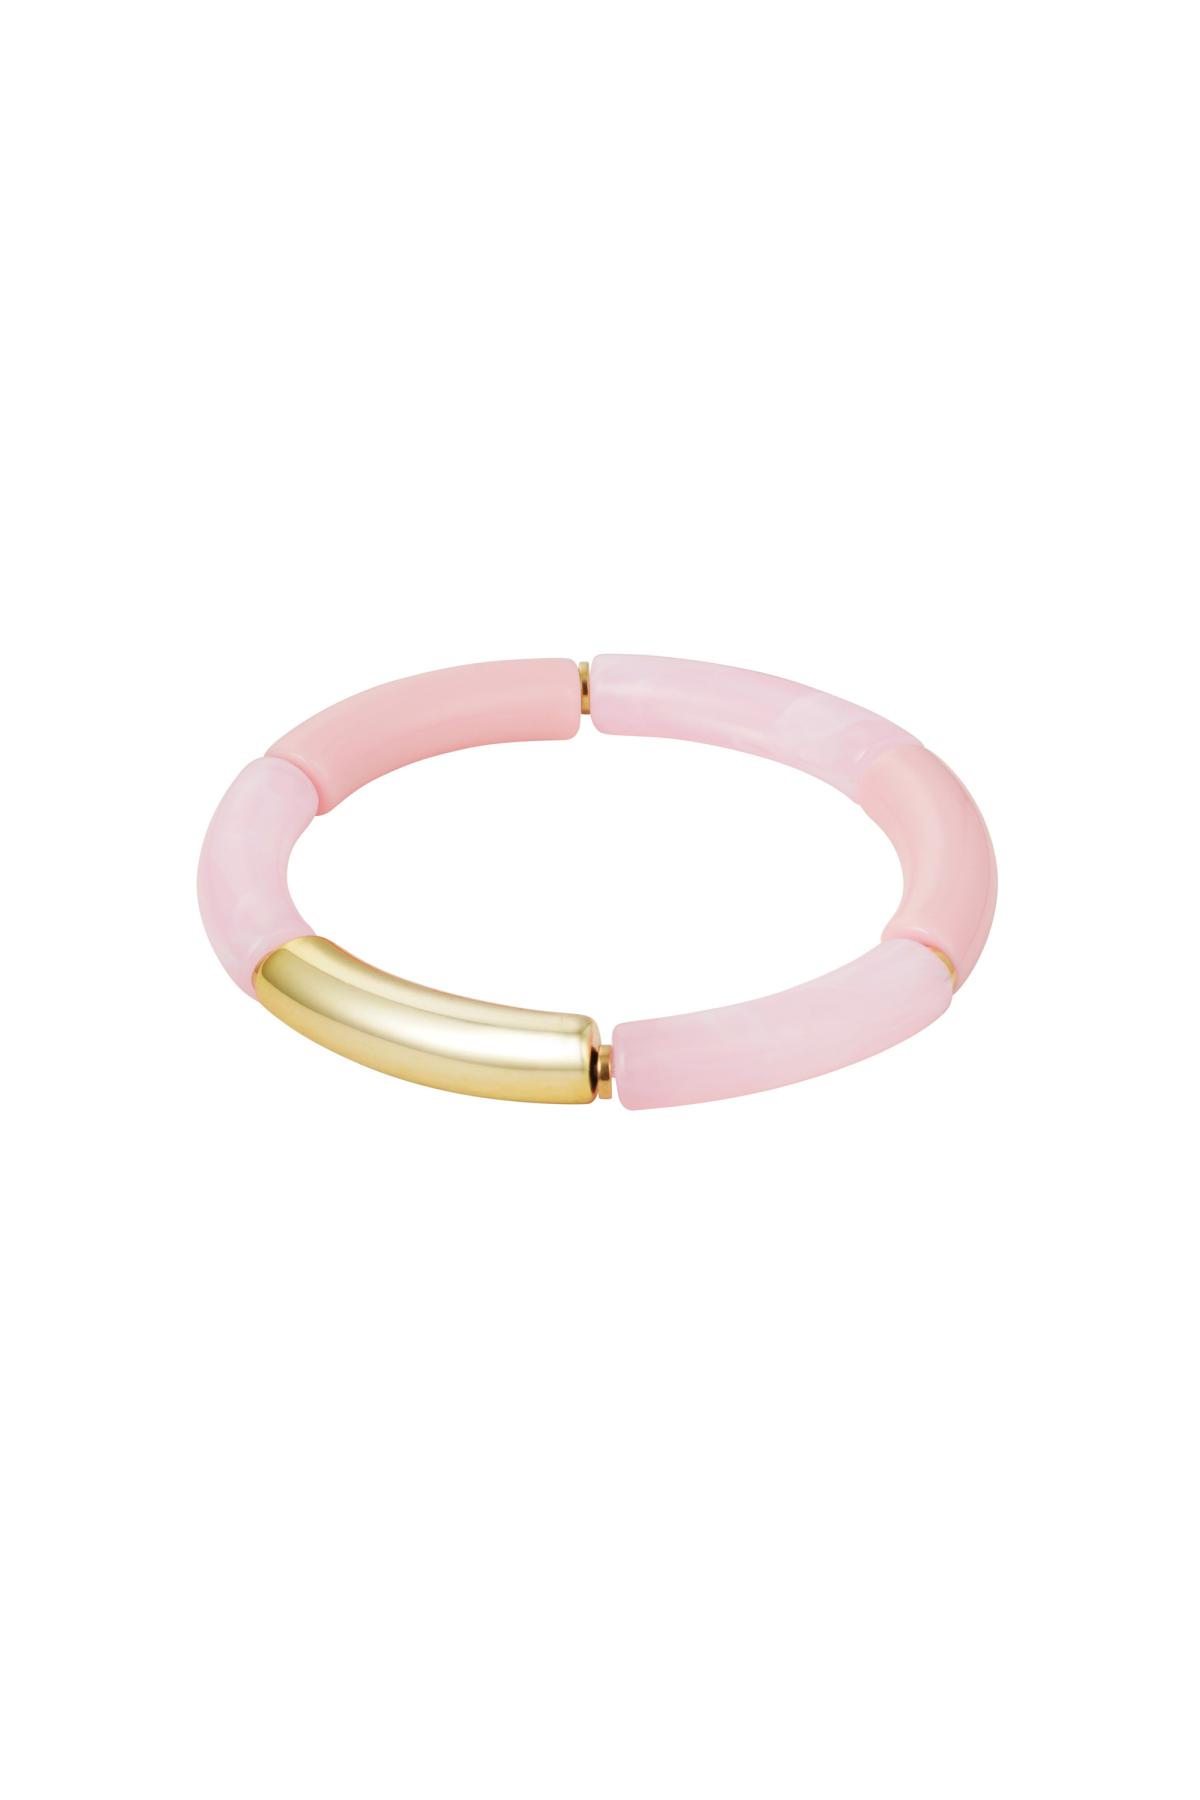 Bracelet tube imprimé marbre Rose pâle Acrylique